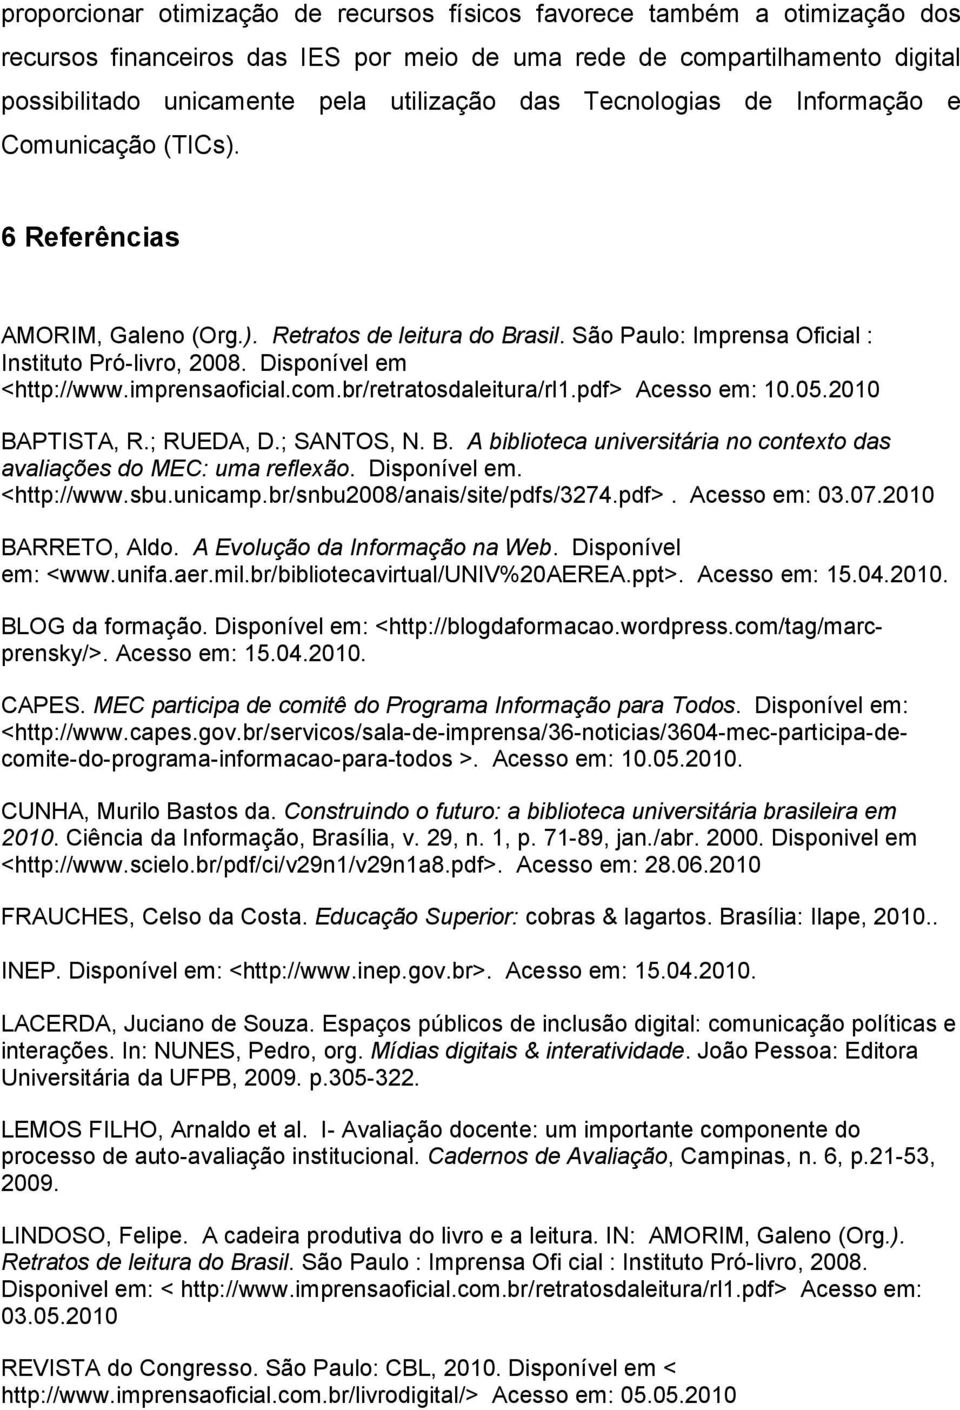 imprensaoficial.com.br/retratosdaleitura/rl1.pdf> Acesso em: 10.05.2010 BAPTISTA, R.; RUEDA, D.; SANTOS, N. B. A biblioteca universitária no contexto das avaliações do MEC: uma reflexão.